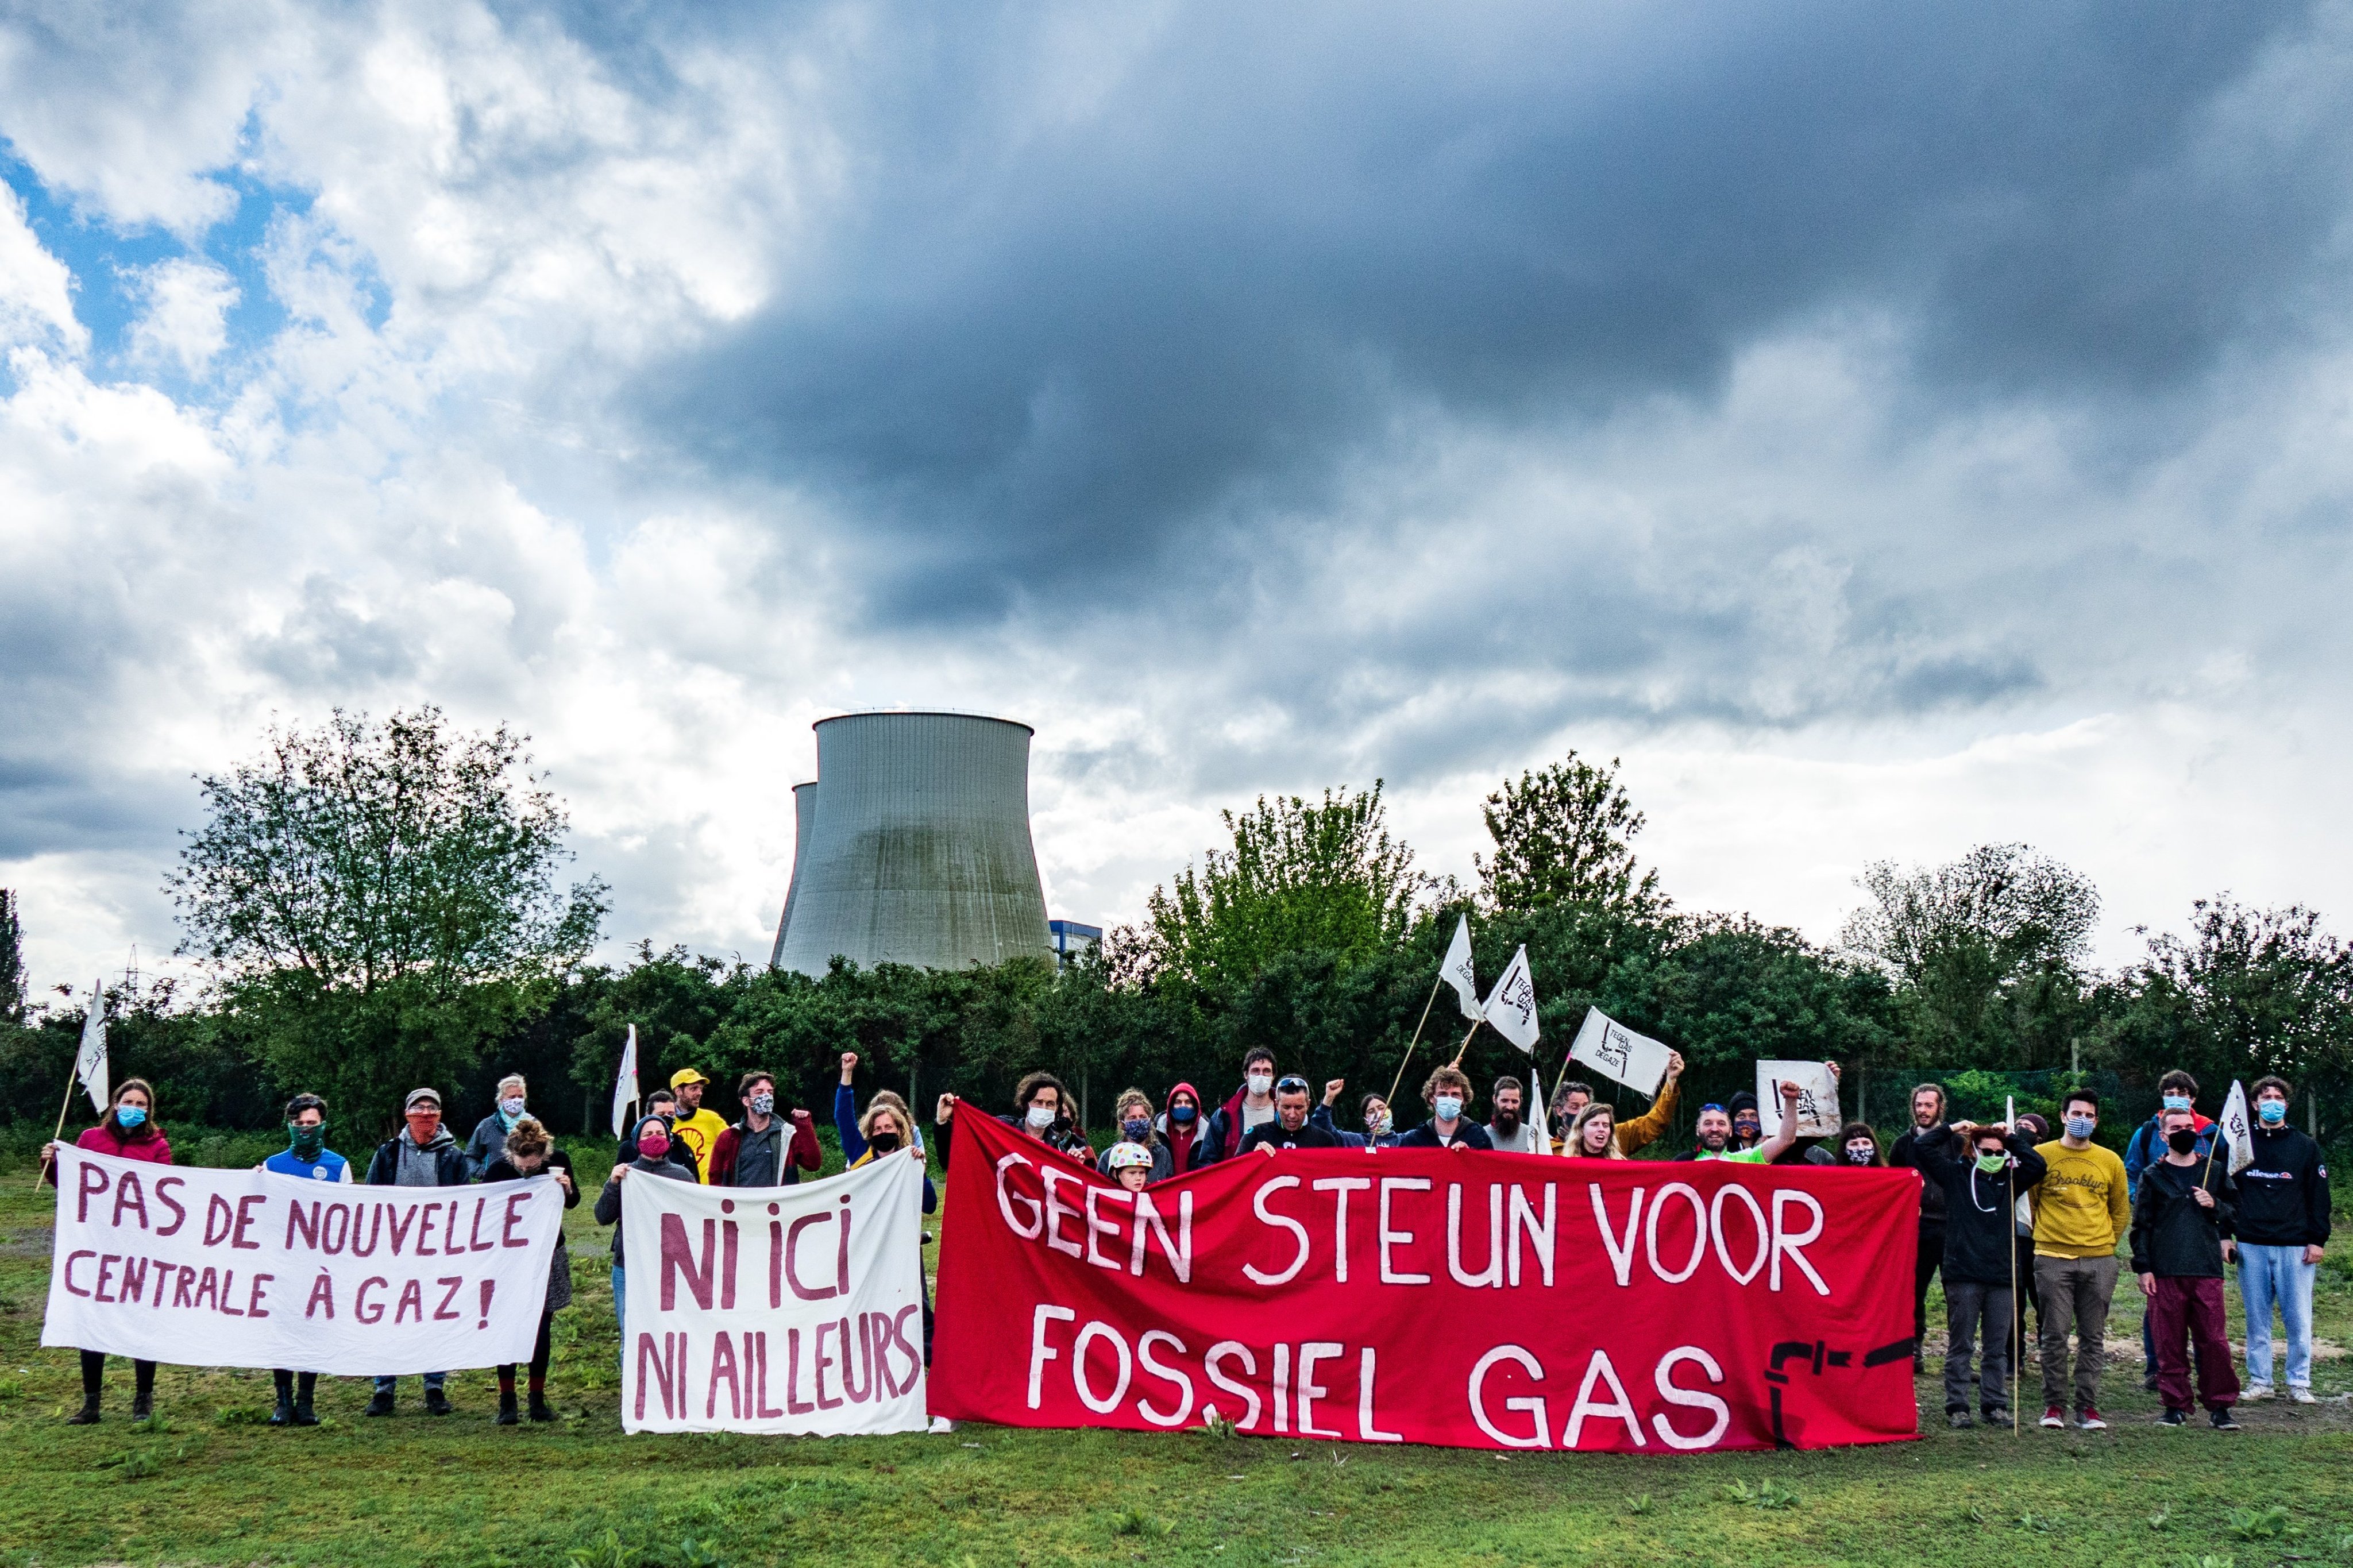 Circa dertig mensen met spandoeken "pas de nouvelle centrale à gaz", "ni ici ni alleurs", "geen steun voor fossiel gas" en vlaggetjes, op de achtergrond de koeltorens van de elektriciteitscentrales van Vilvoorde